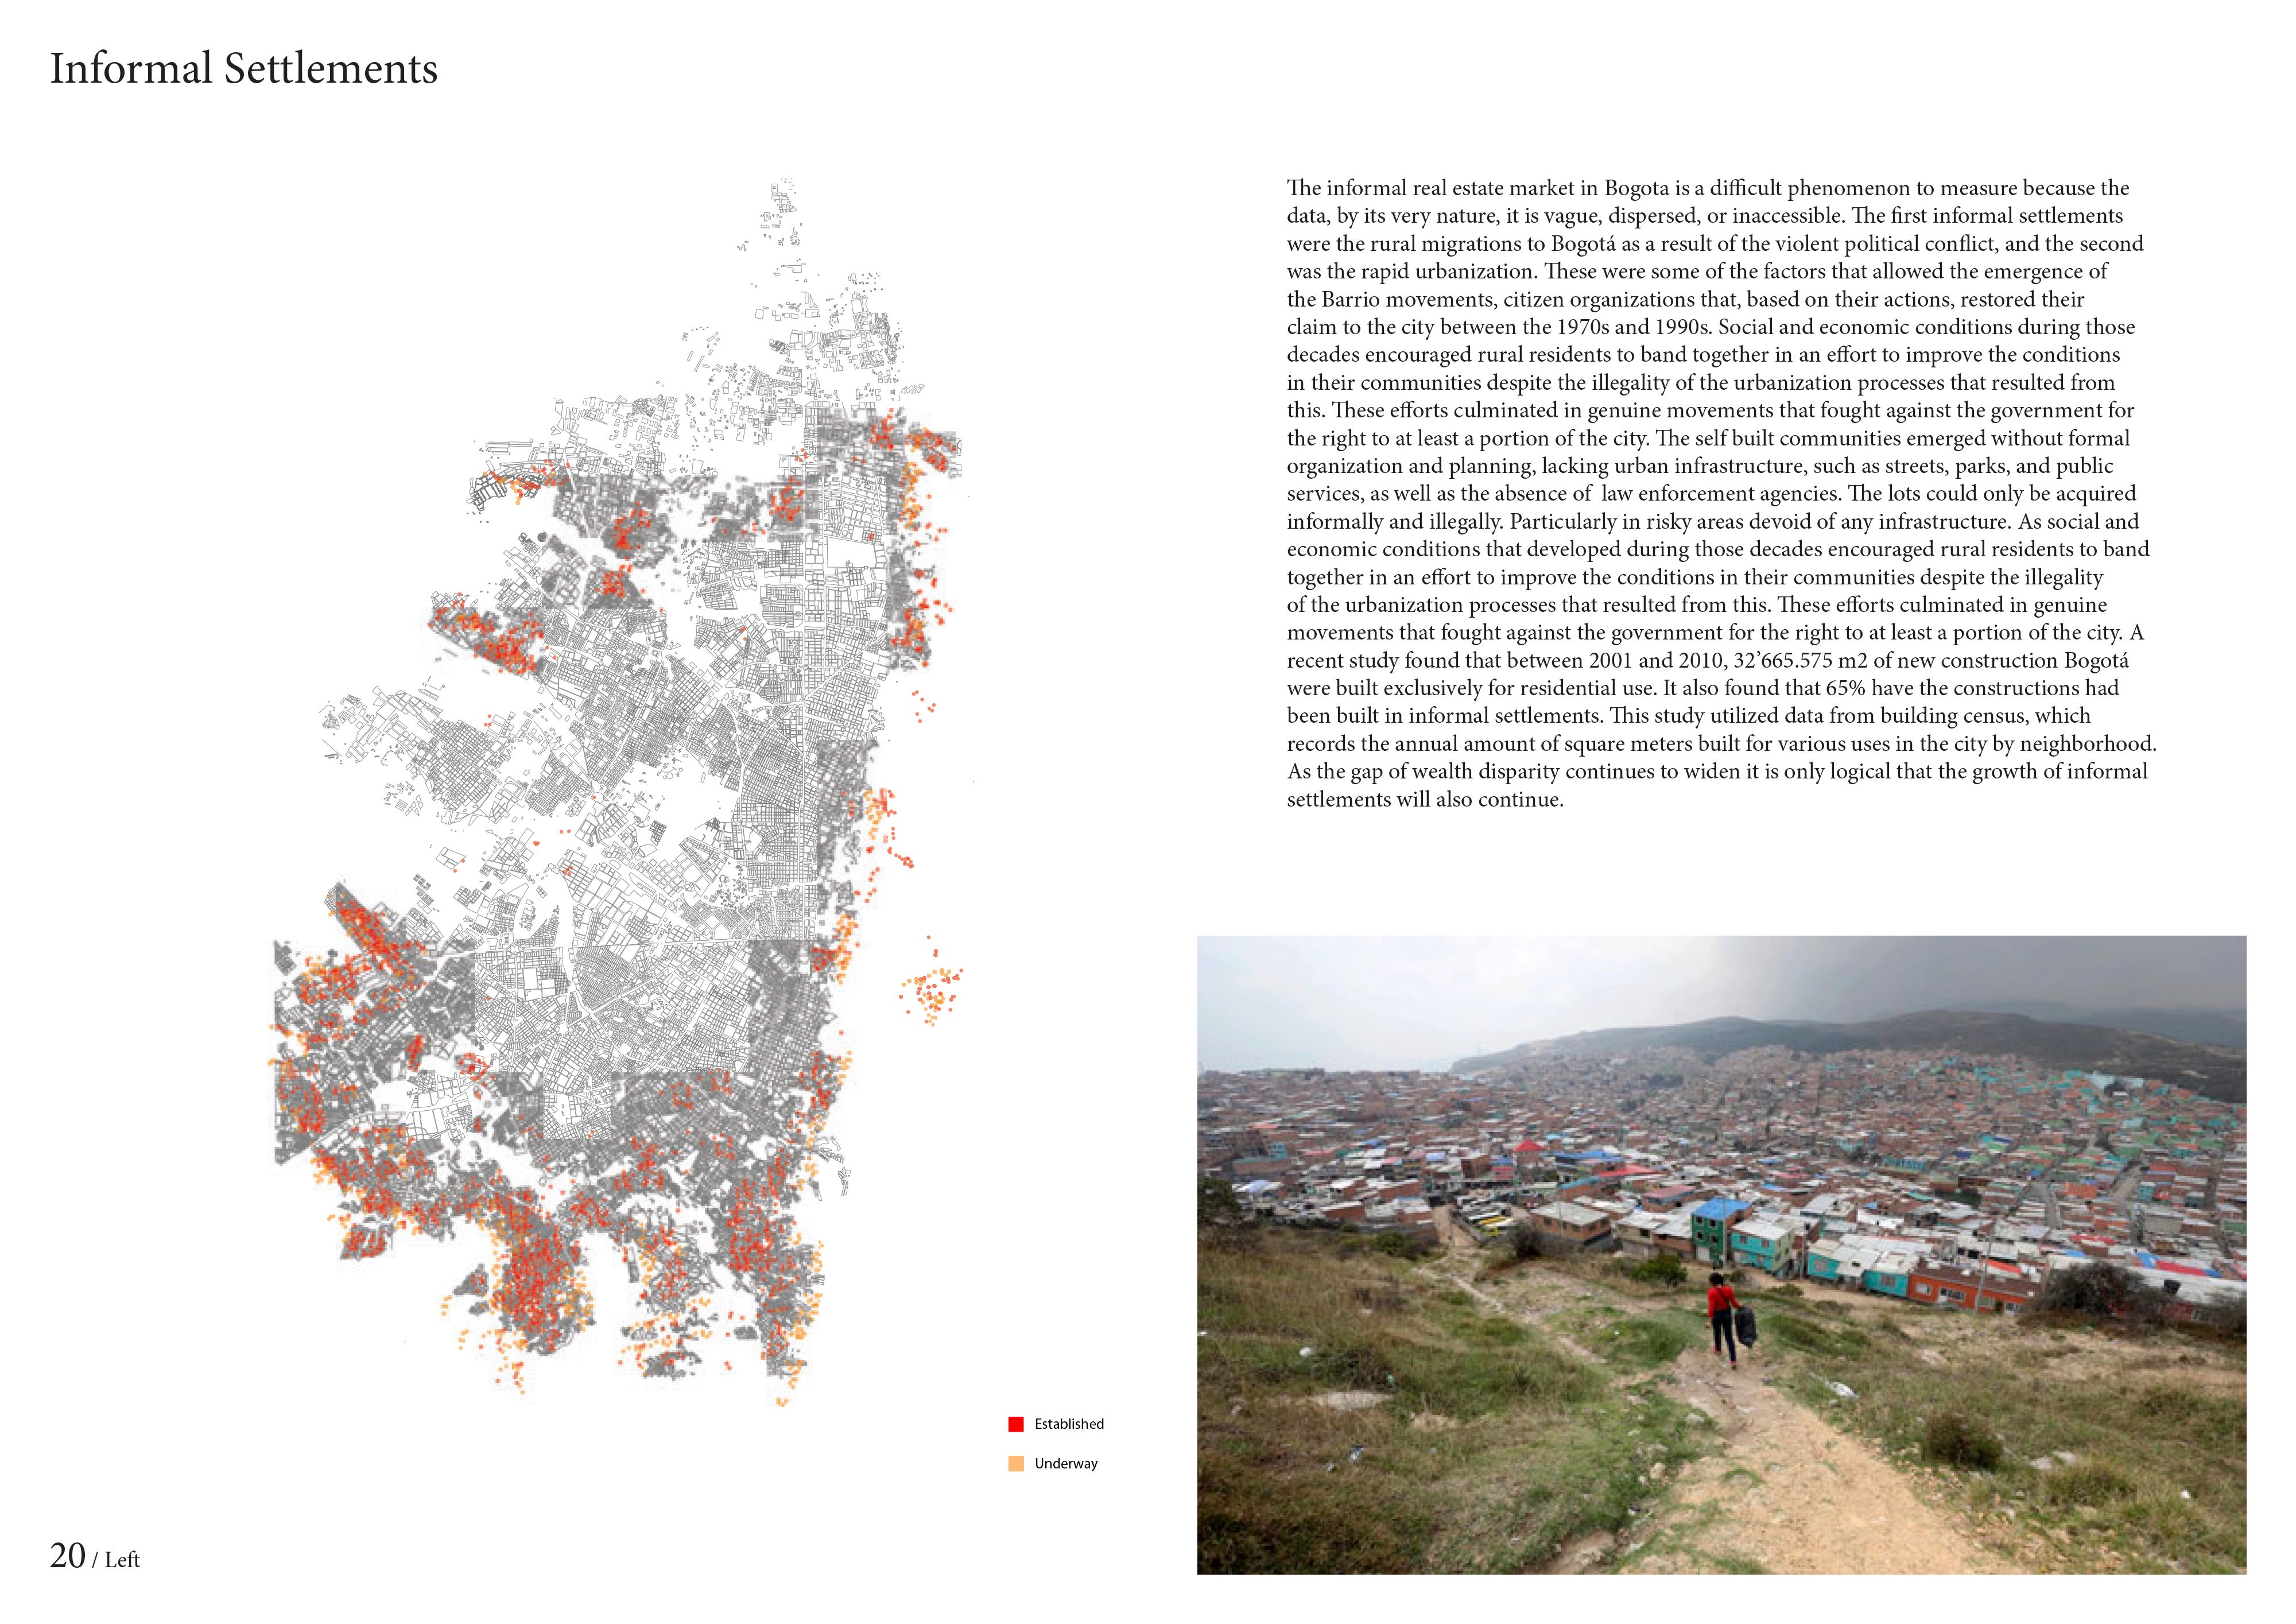 Informal Settlements in Bogota